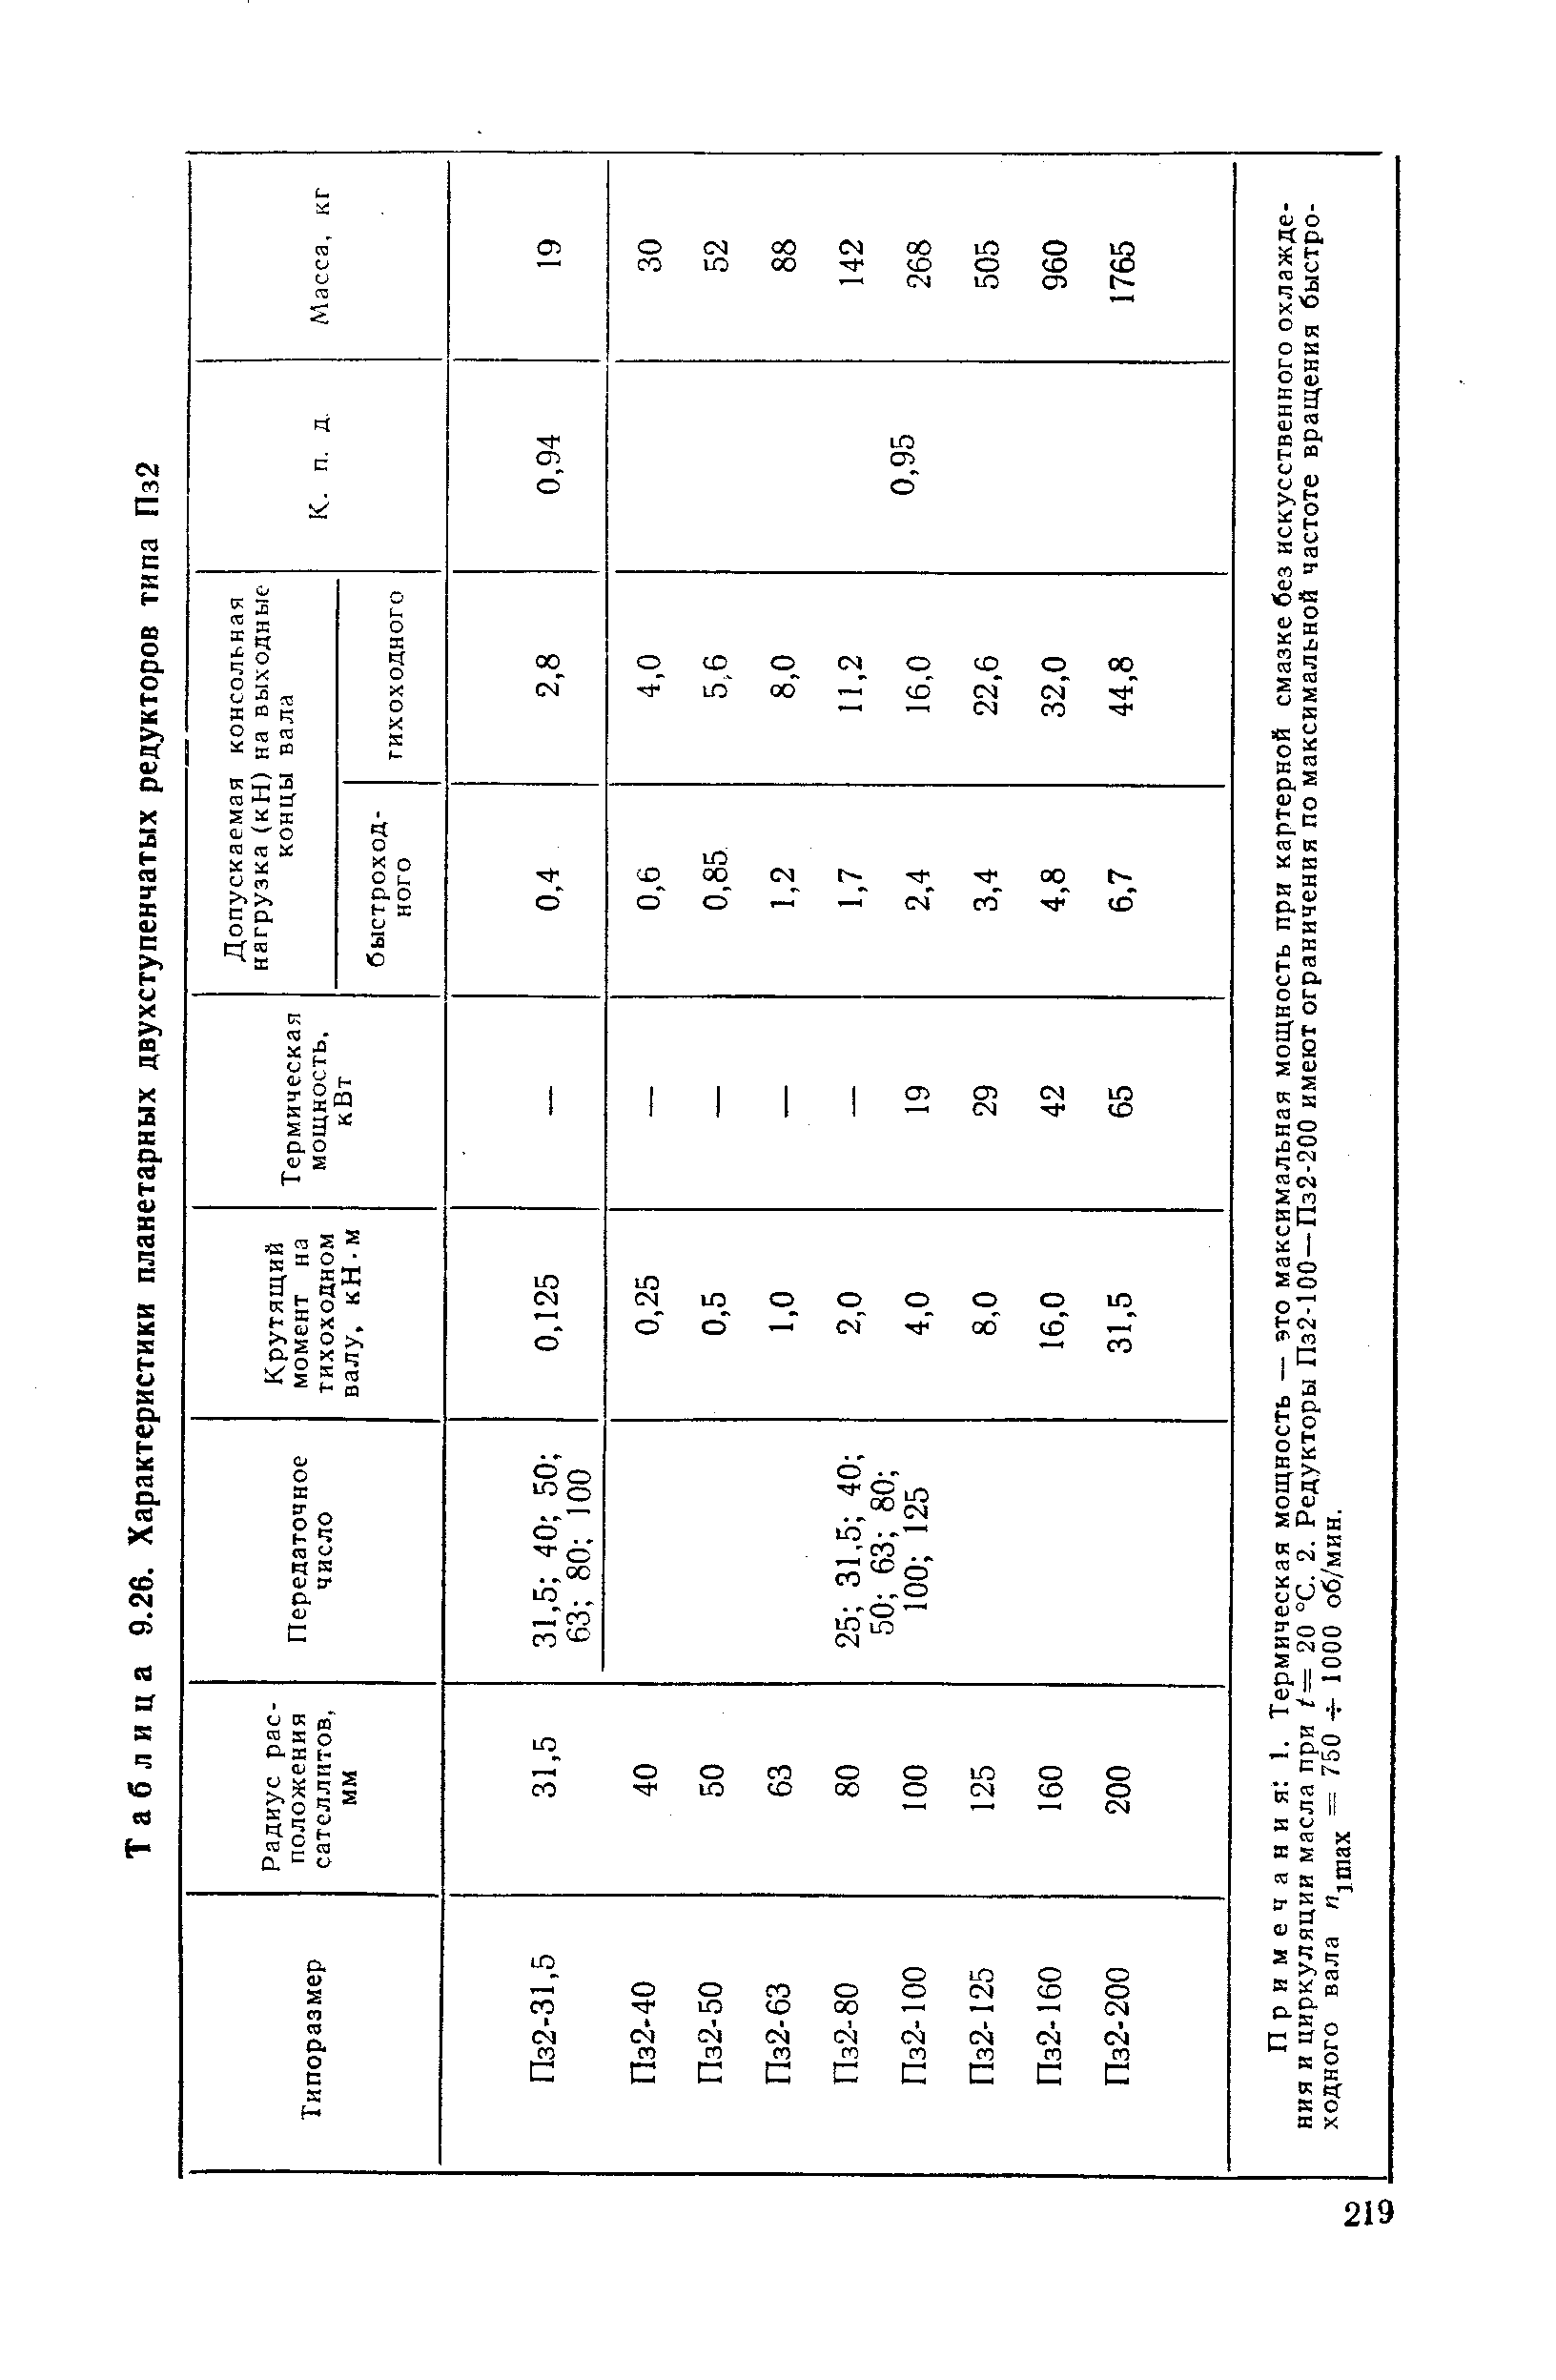 Таблица 9.26. Характеристики планетарных двухступенчатых редукторов типа Пз2
